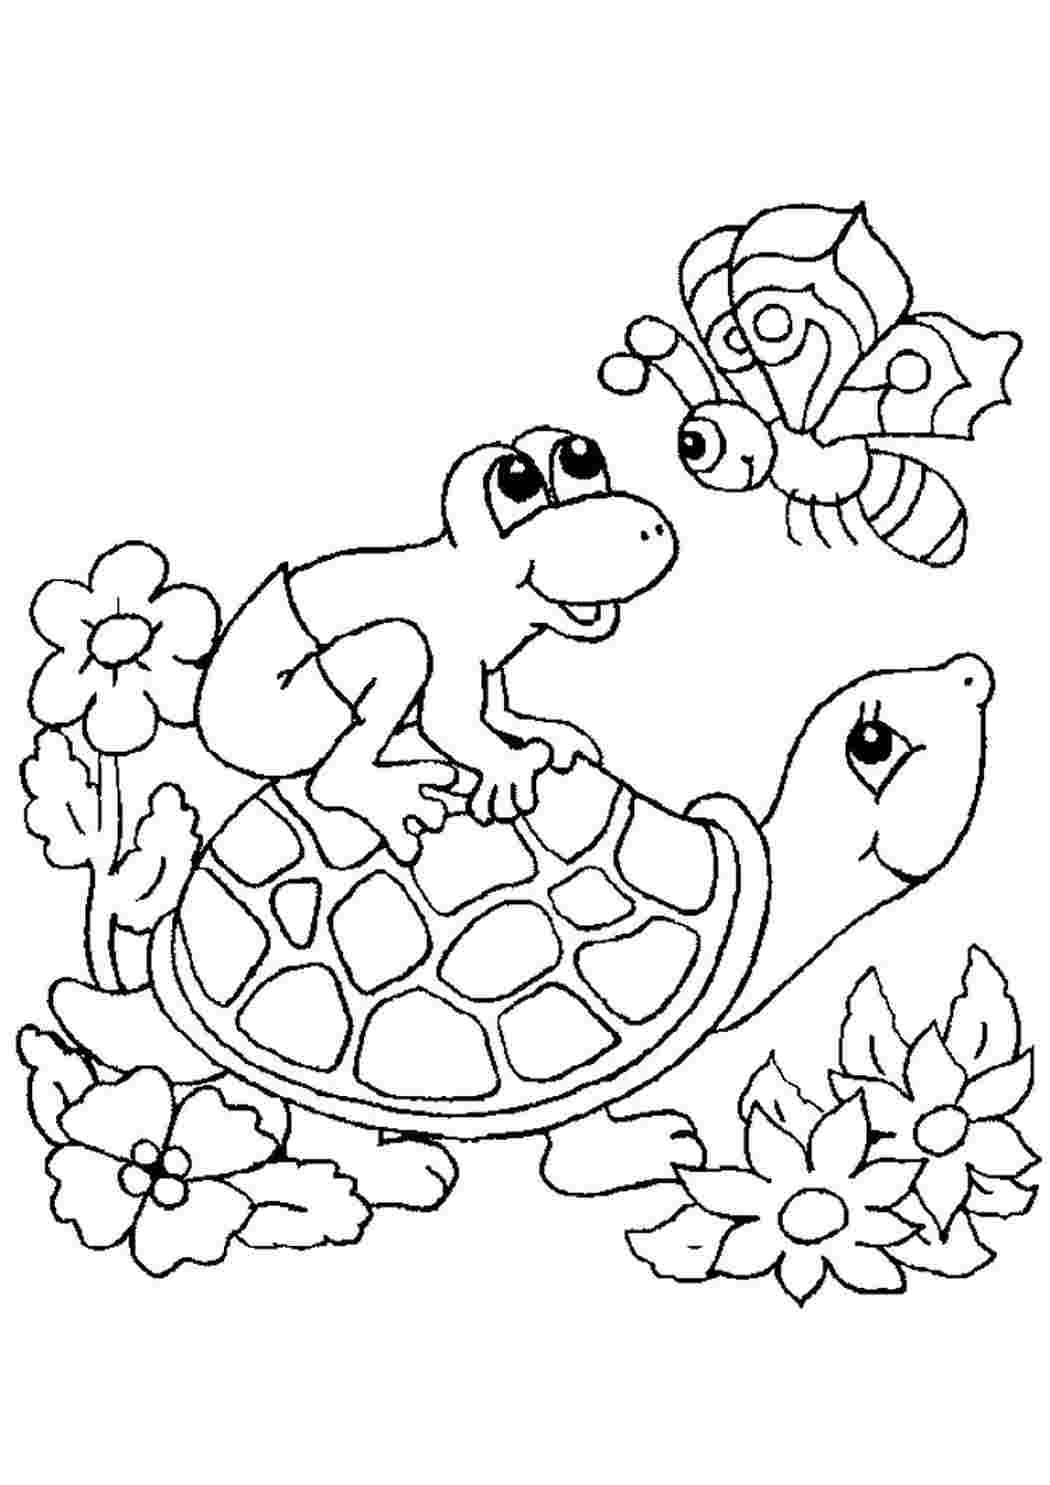 Черепаха раскраска для малышей